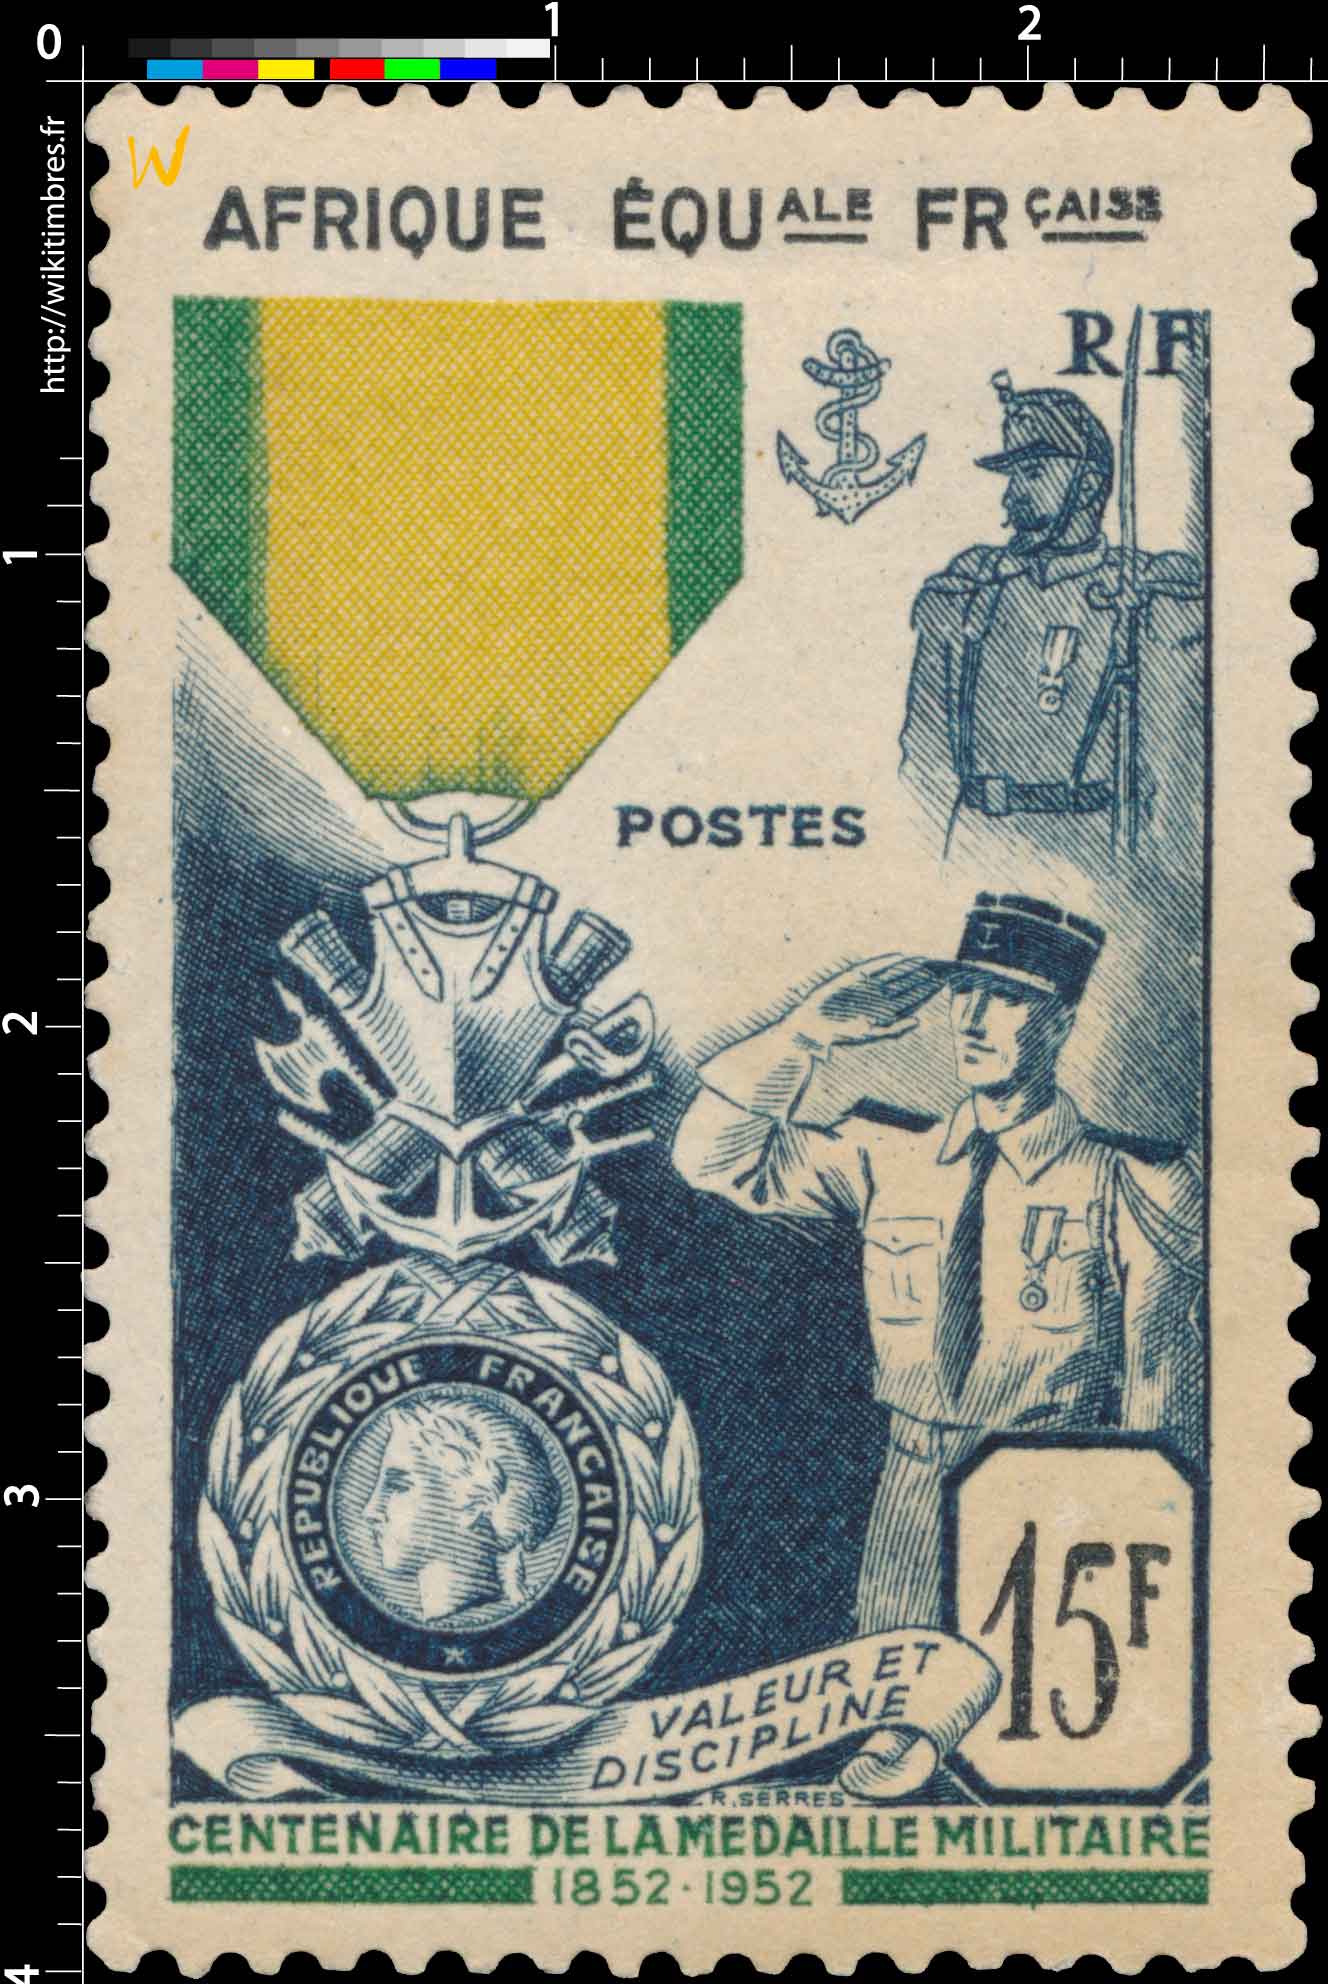 Centenaire de la médaille militaire française valeur et discipline